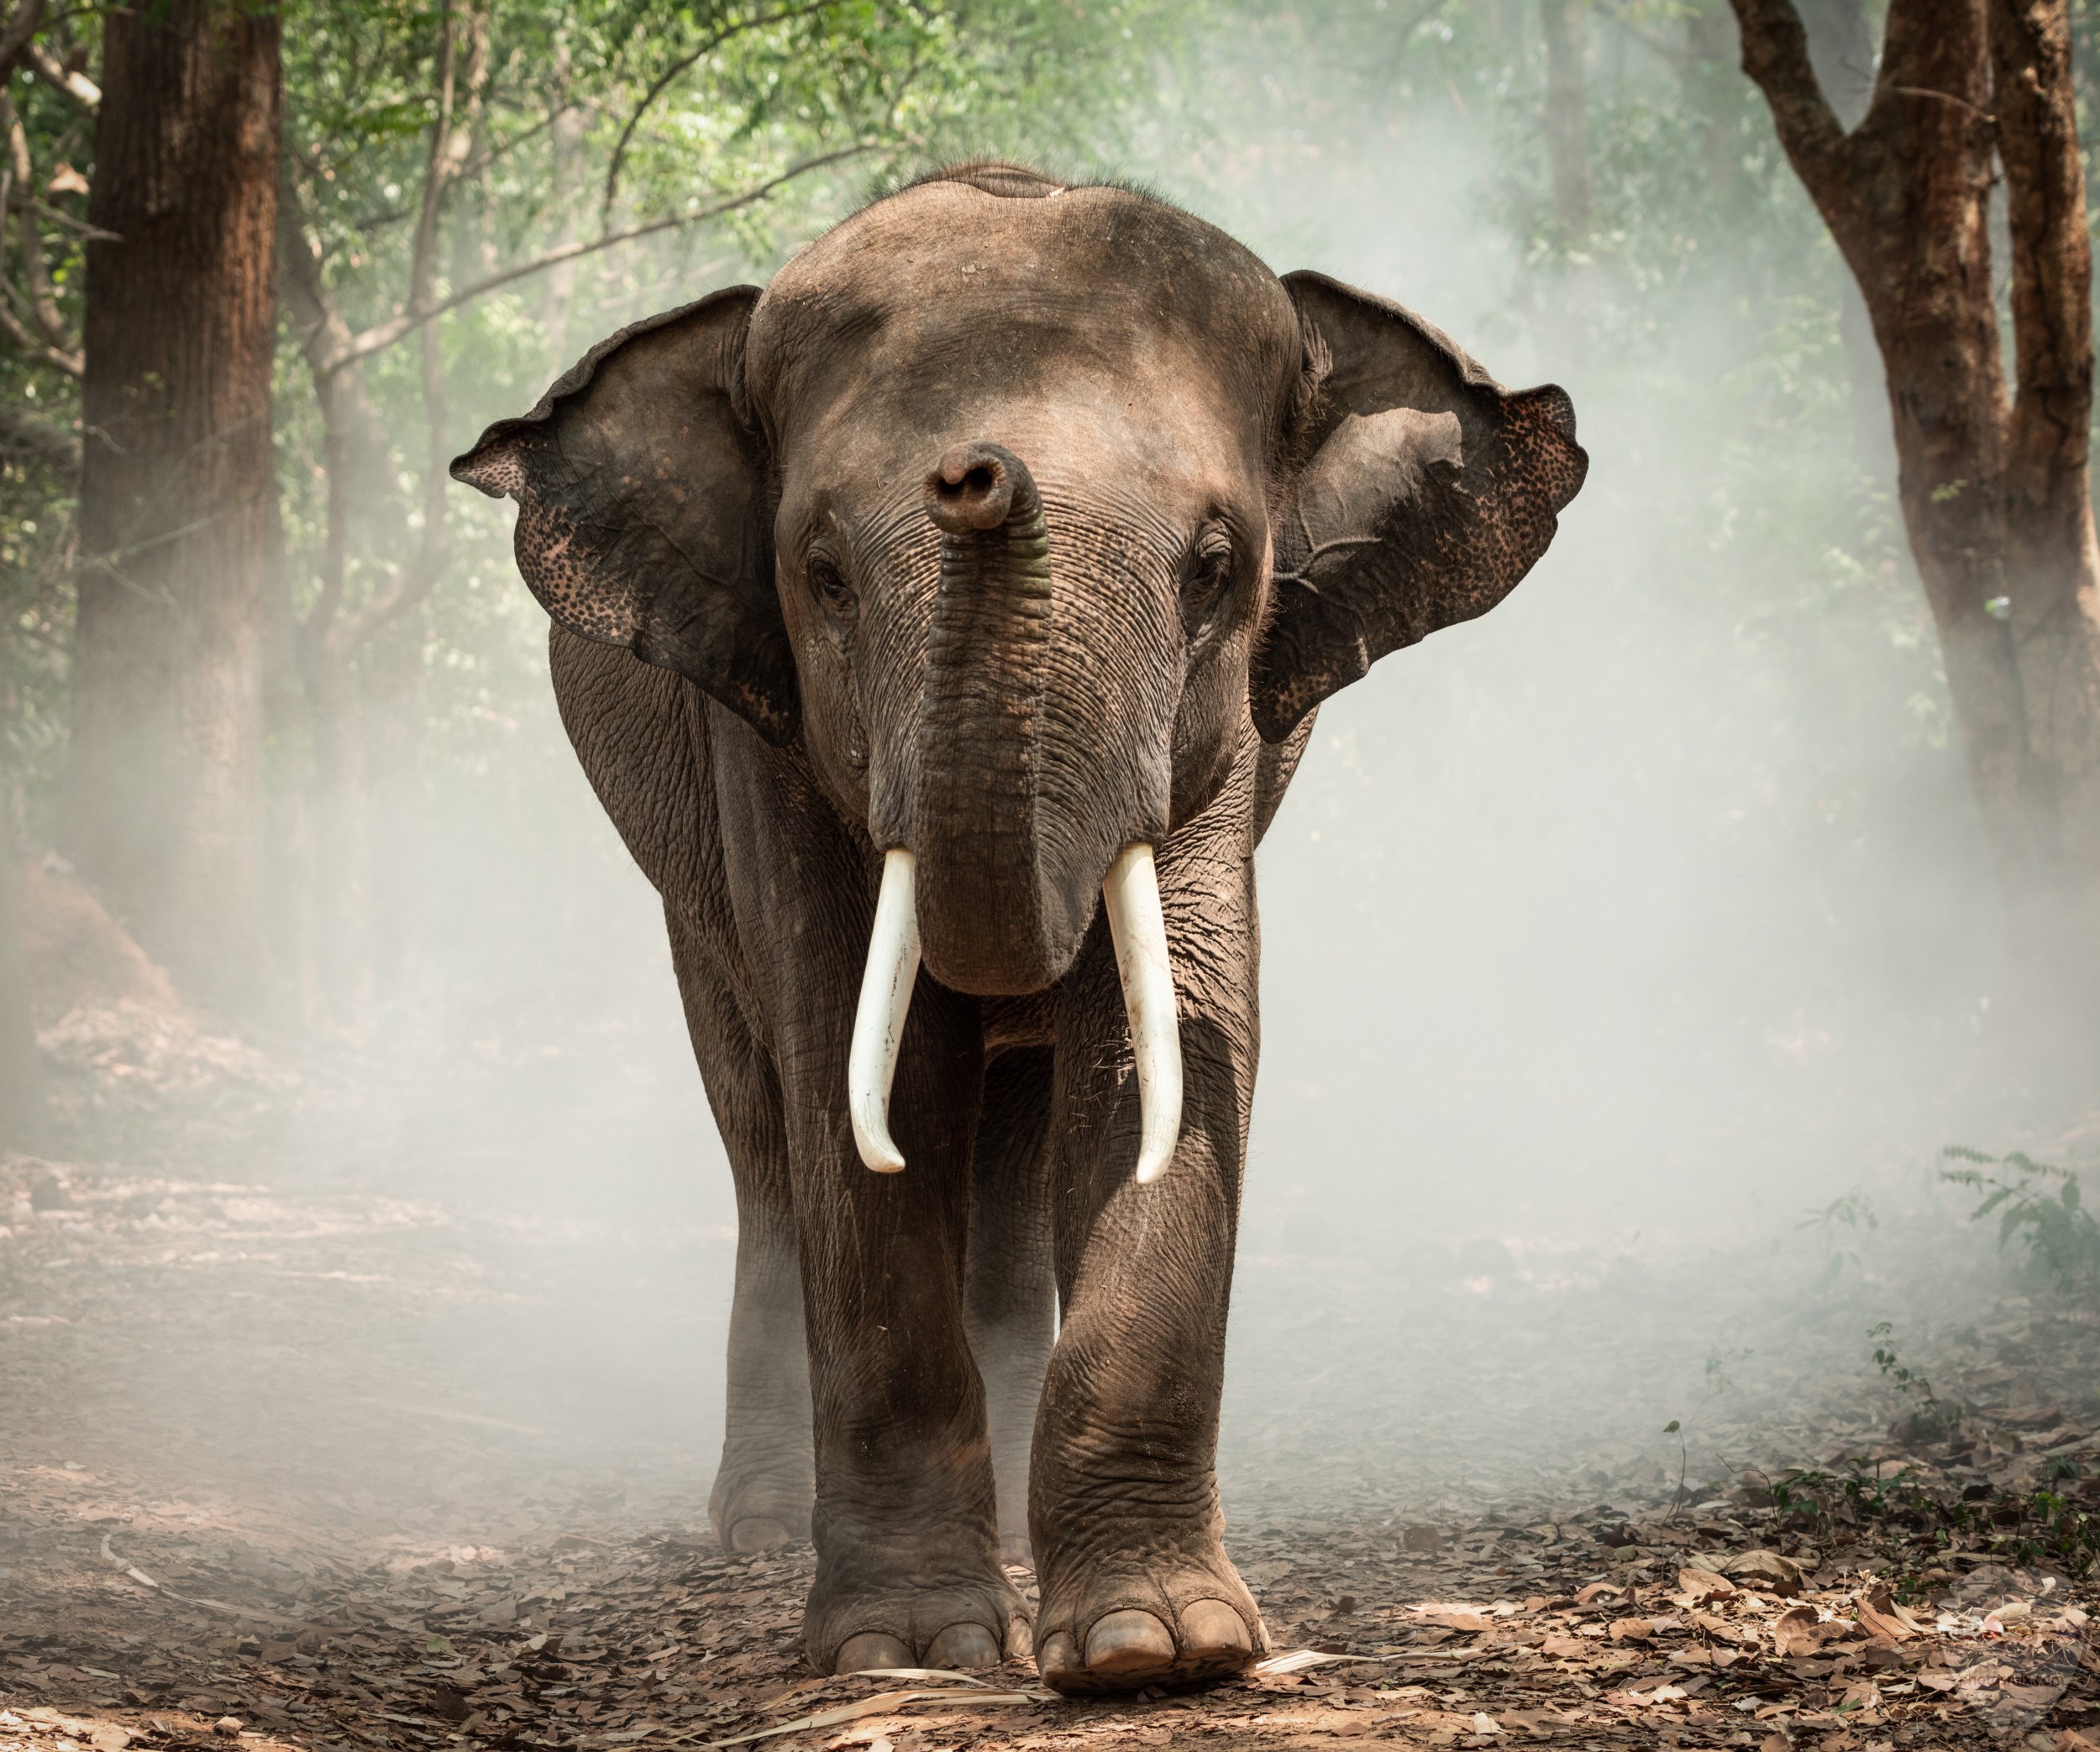 صور الفيل لمحبي الحيوانات وخصوصا الفيل سنقدم لكم مجموعة صور رائعة وجميلة جدا عن حيوان الفيل 2